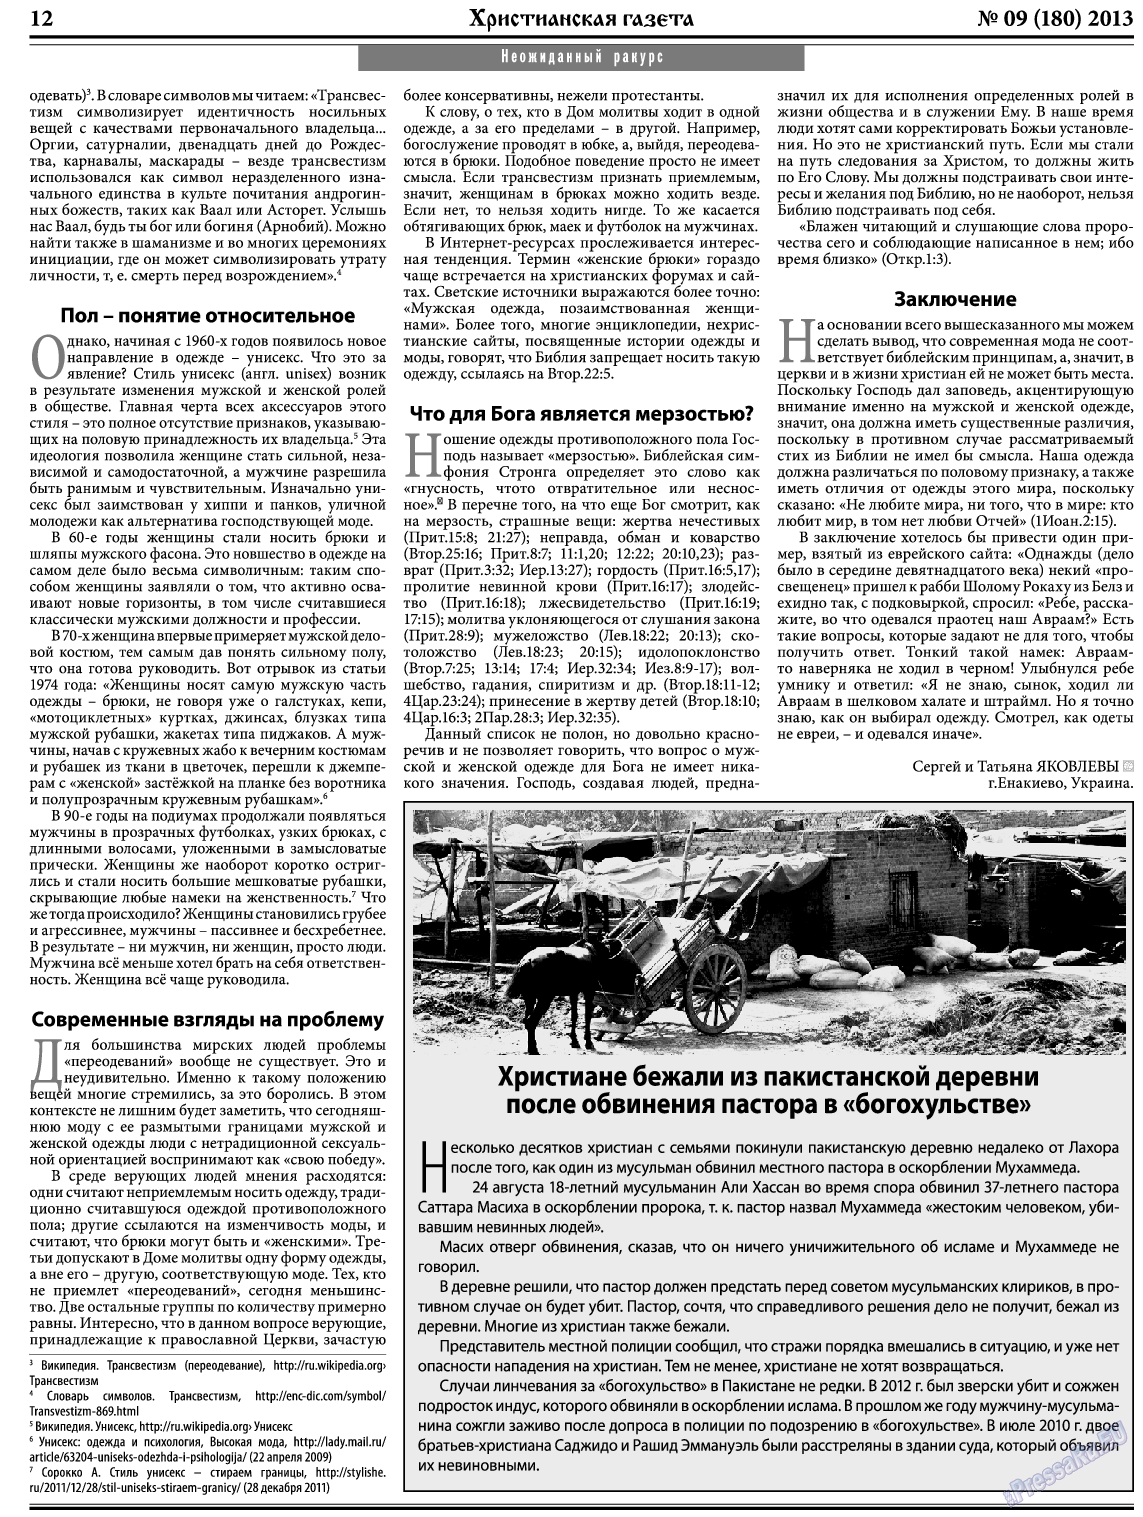 Христианская газета, газета. 2013 №9 стр.12